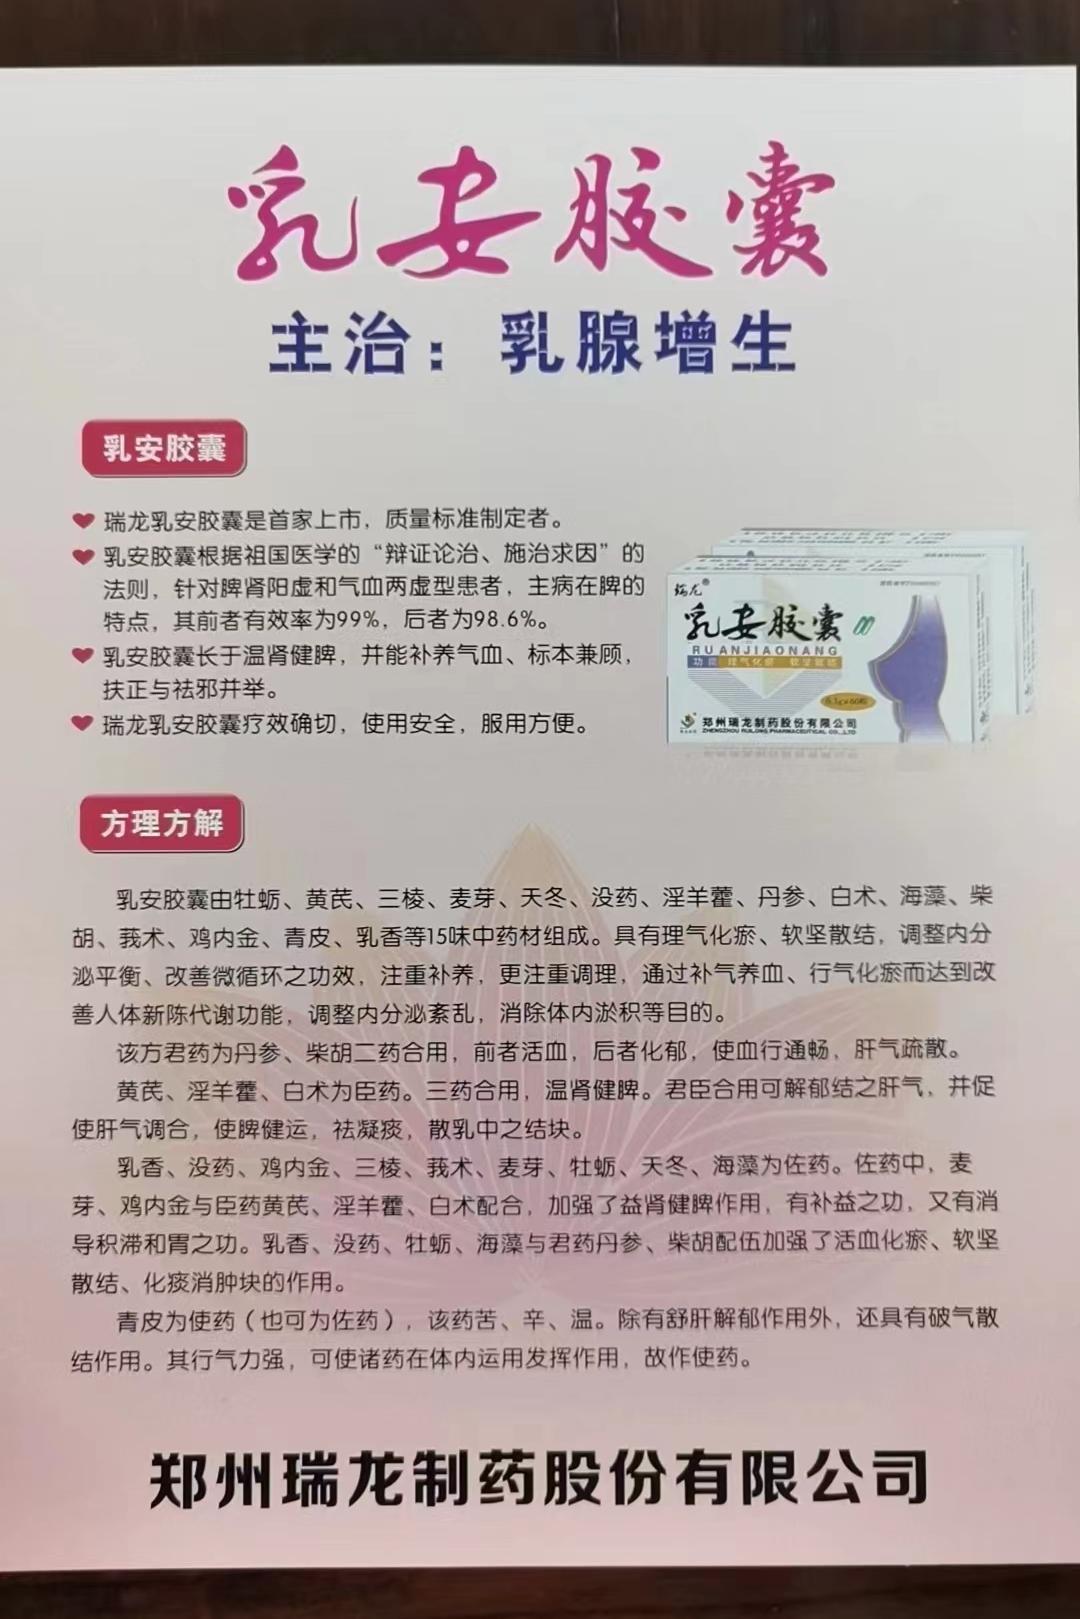 股份有限公司通过河南省慈善联合总会为信阳市捐赠乳安胶囊4800盒